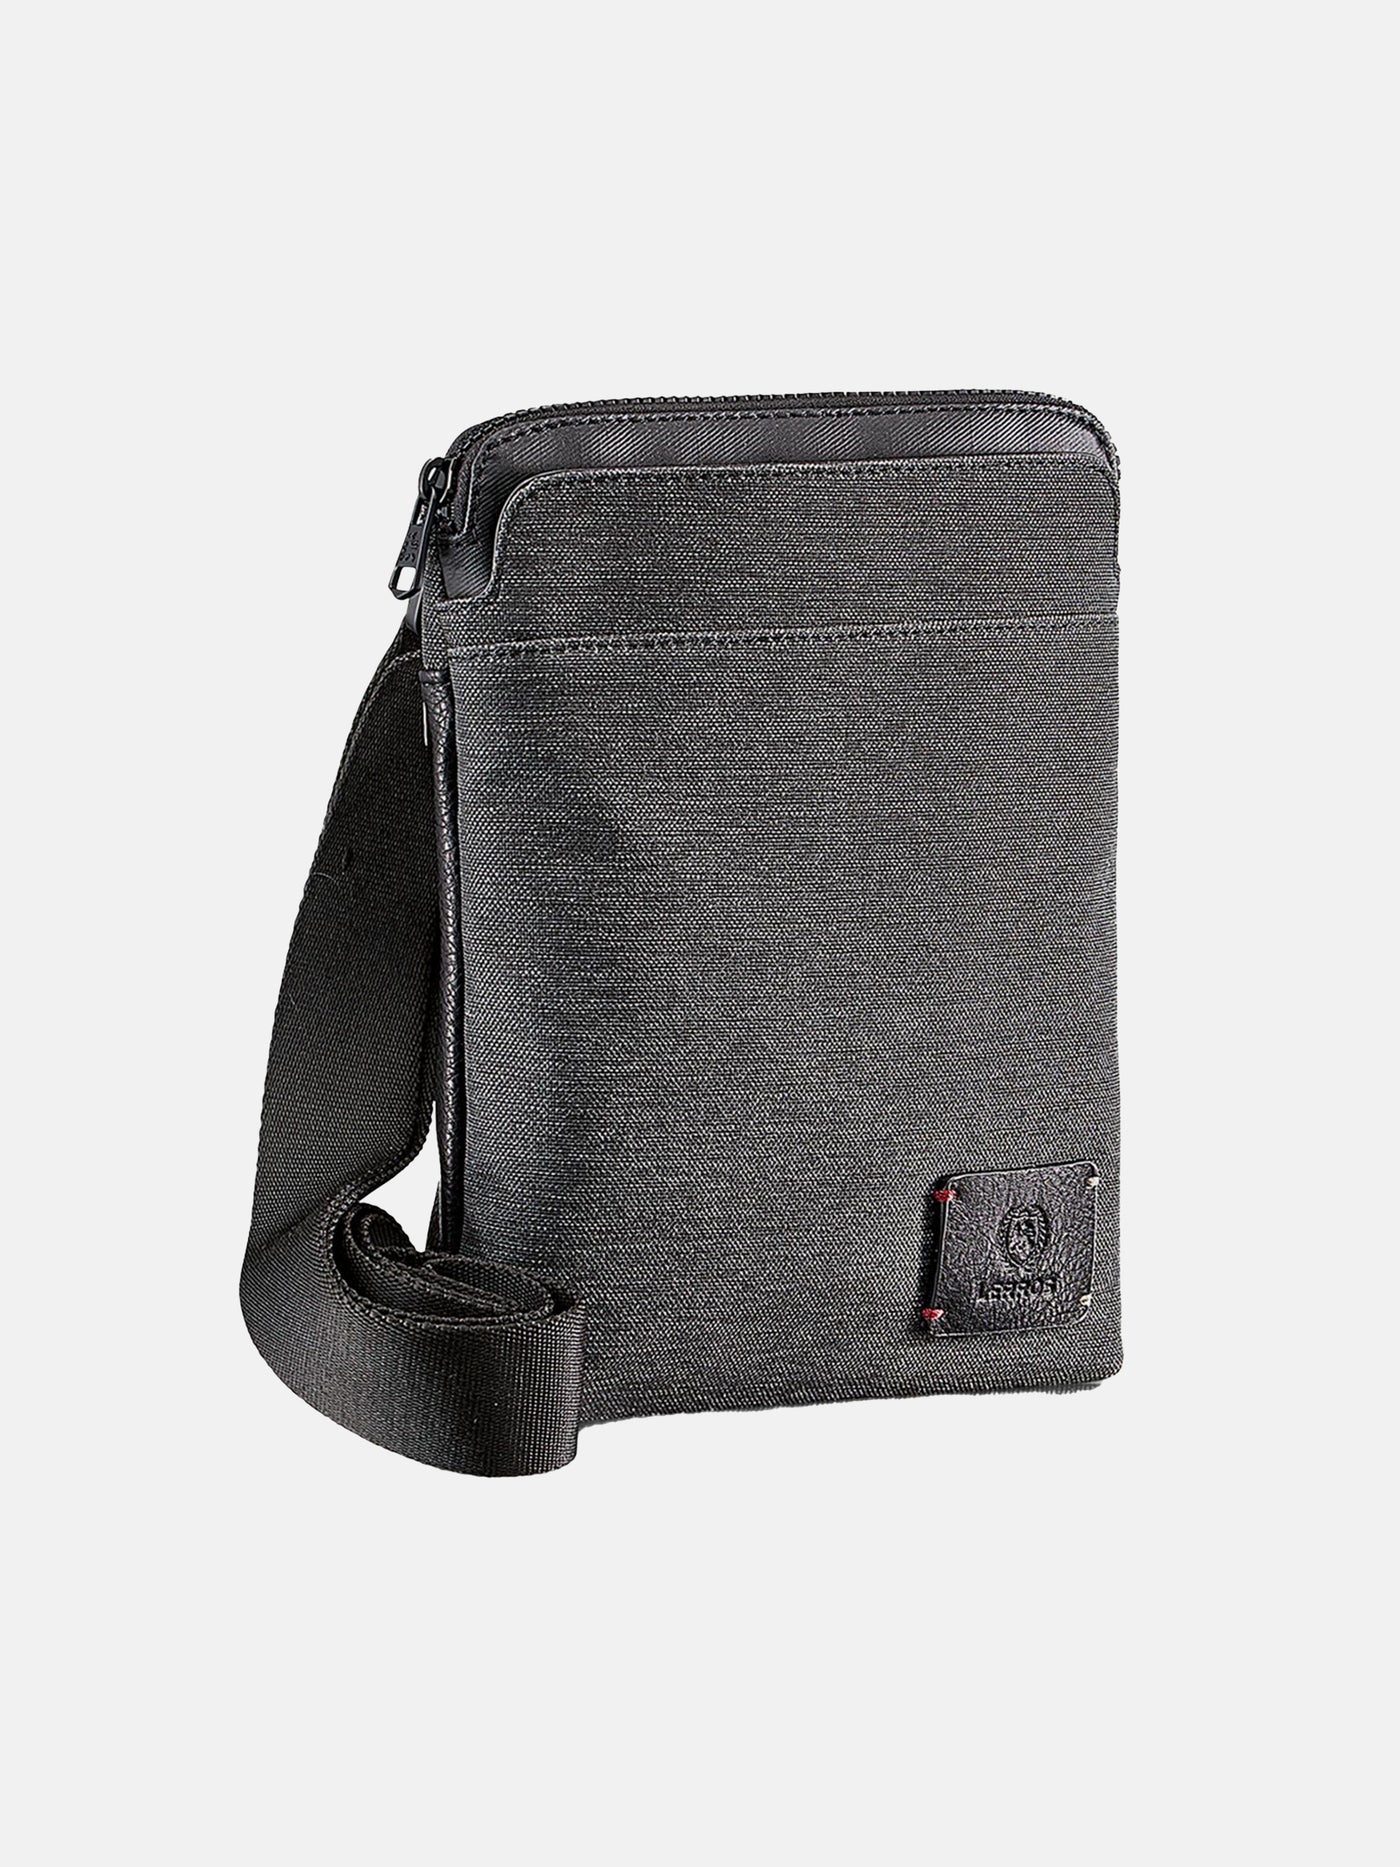 Basic shoulder bag, small